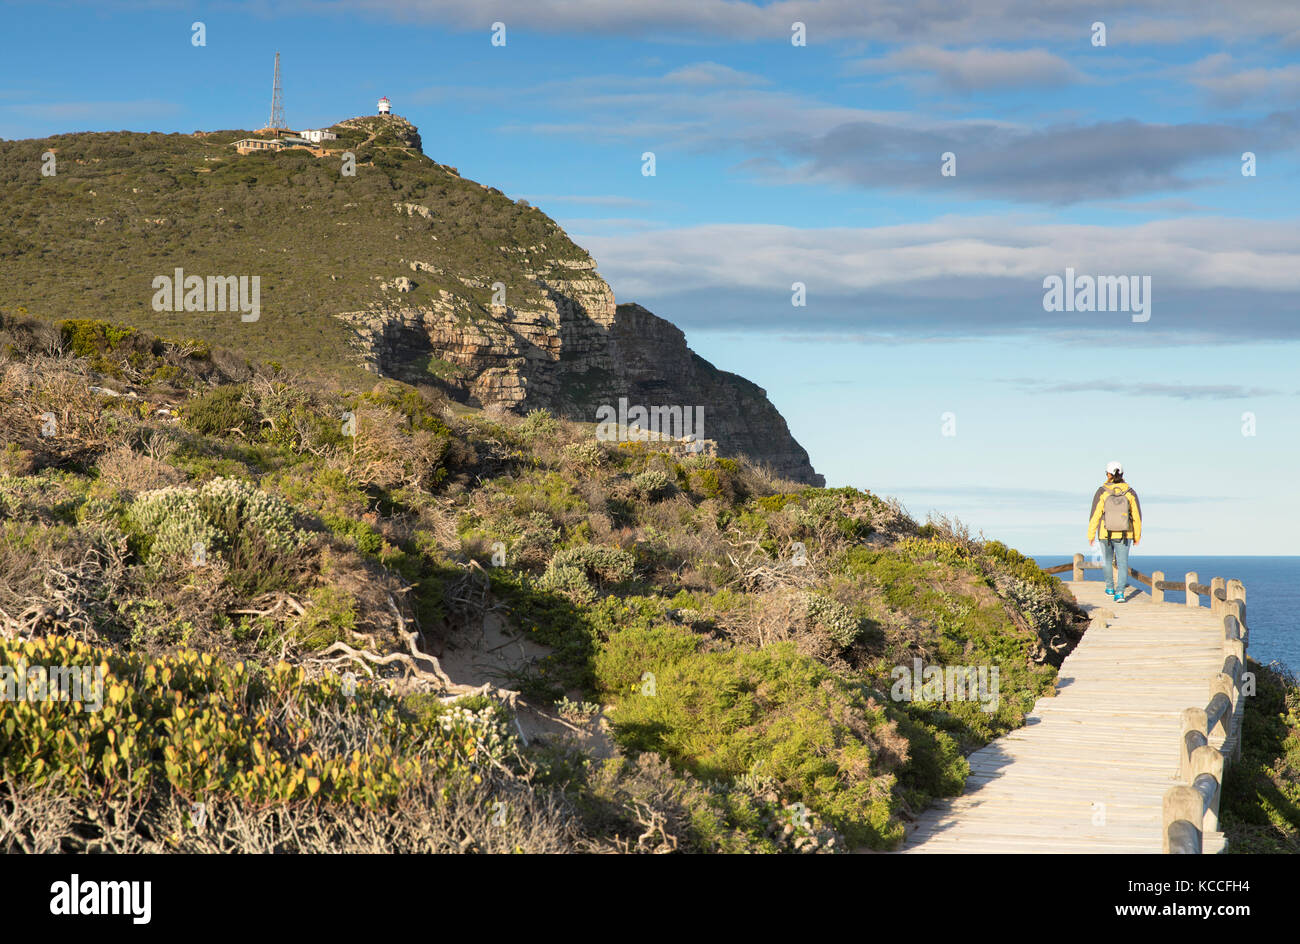 Femme de la randonnée au cap de Bonne Espérance, le parc national de Cape Point, Cape Town, Western Cape, Afrique du Sud (M.) Banque D'Images